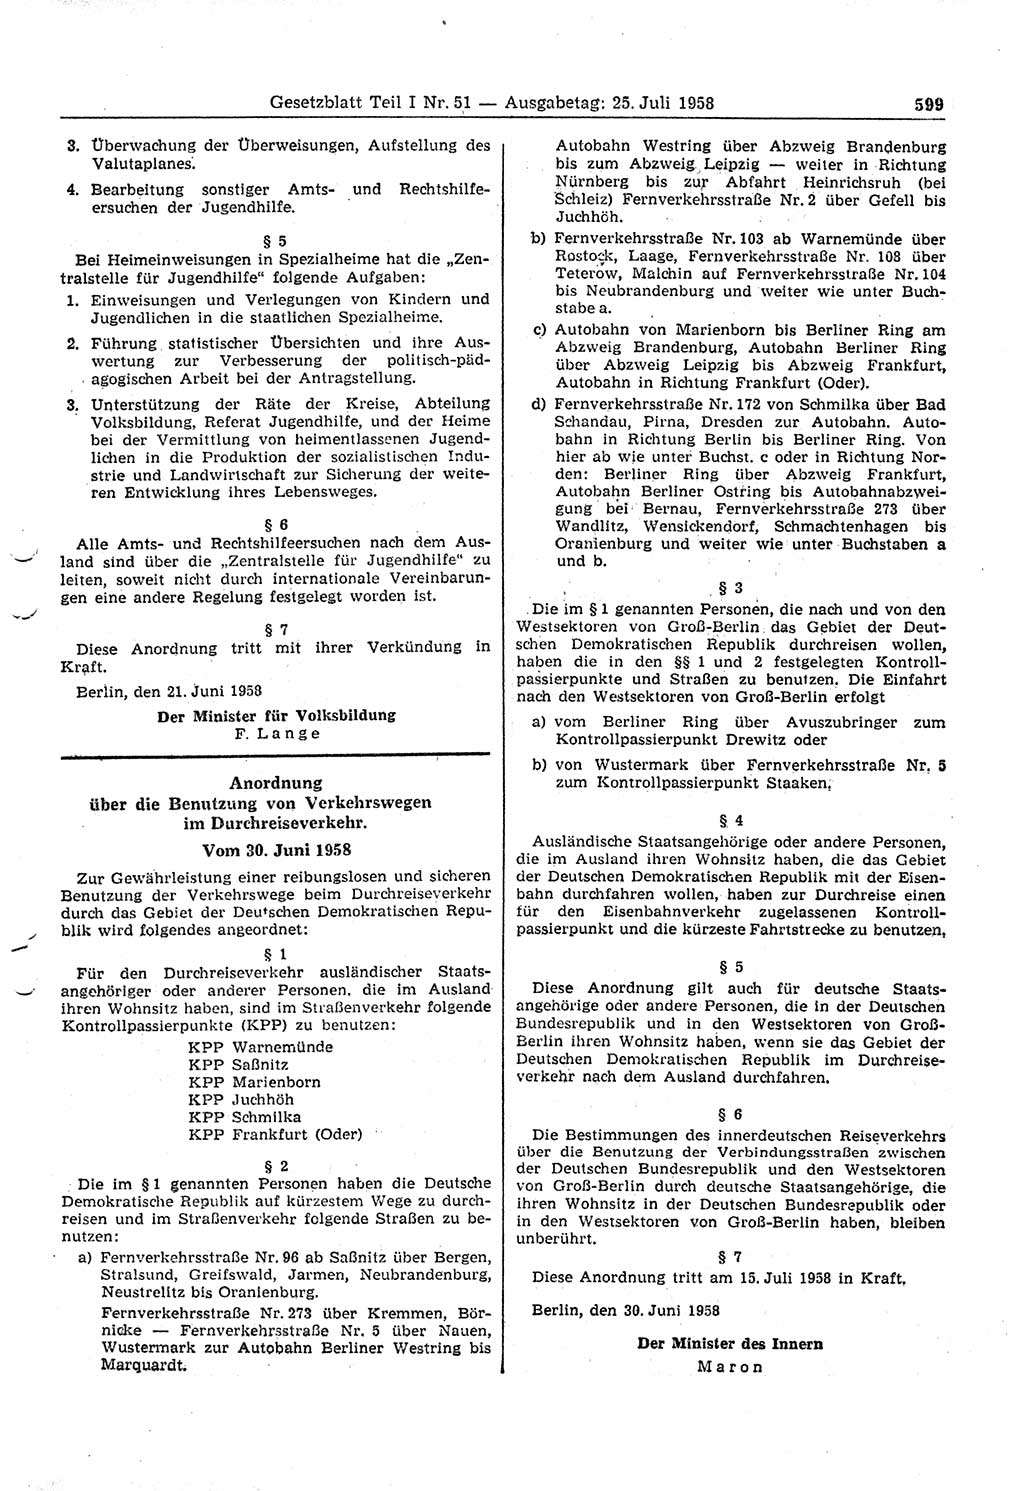 Gesetzblatt (GBl.) der Deutschen Demokratischen Republik (DDR) Teil Ⅰ 1958, Seite 599 (GBl. DDR Ⅰ 1958, S. 599)